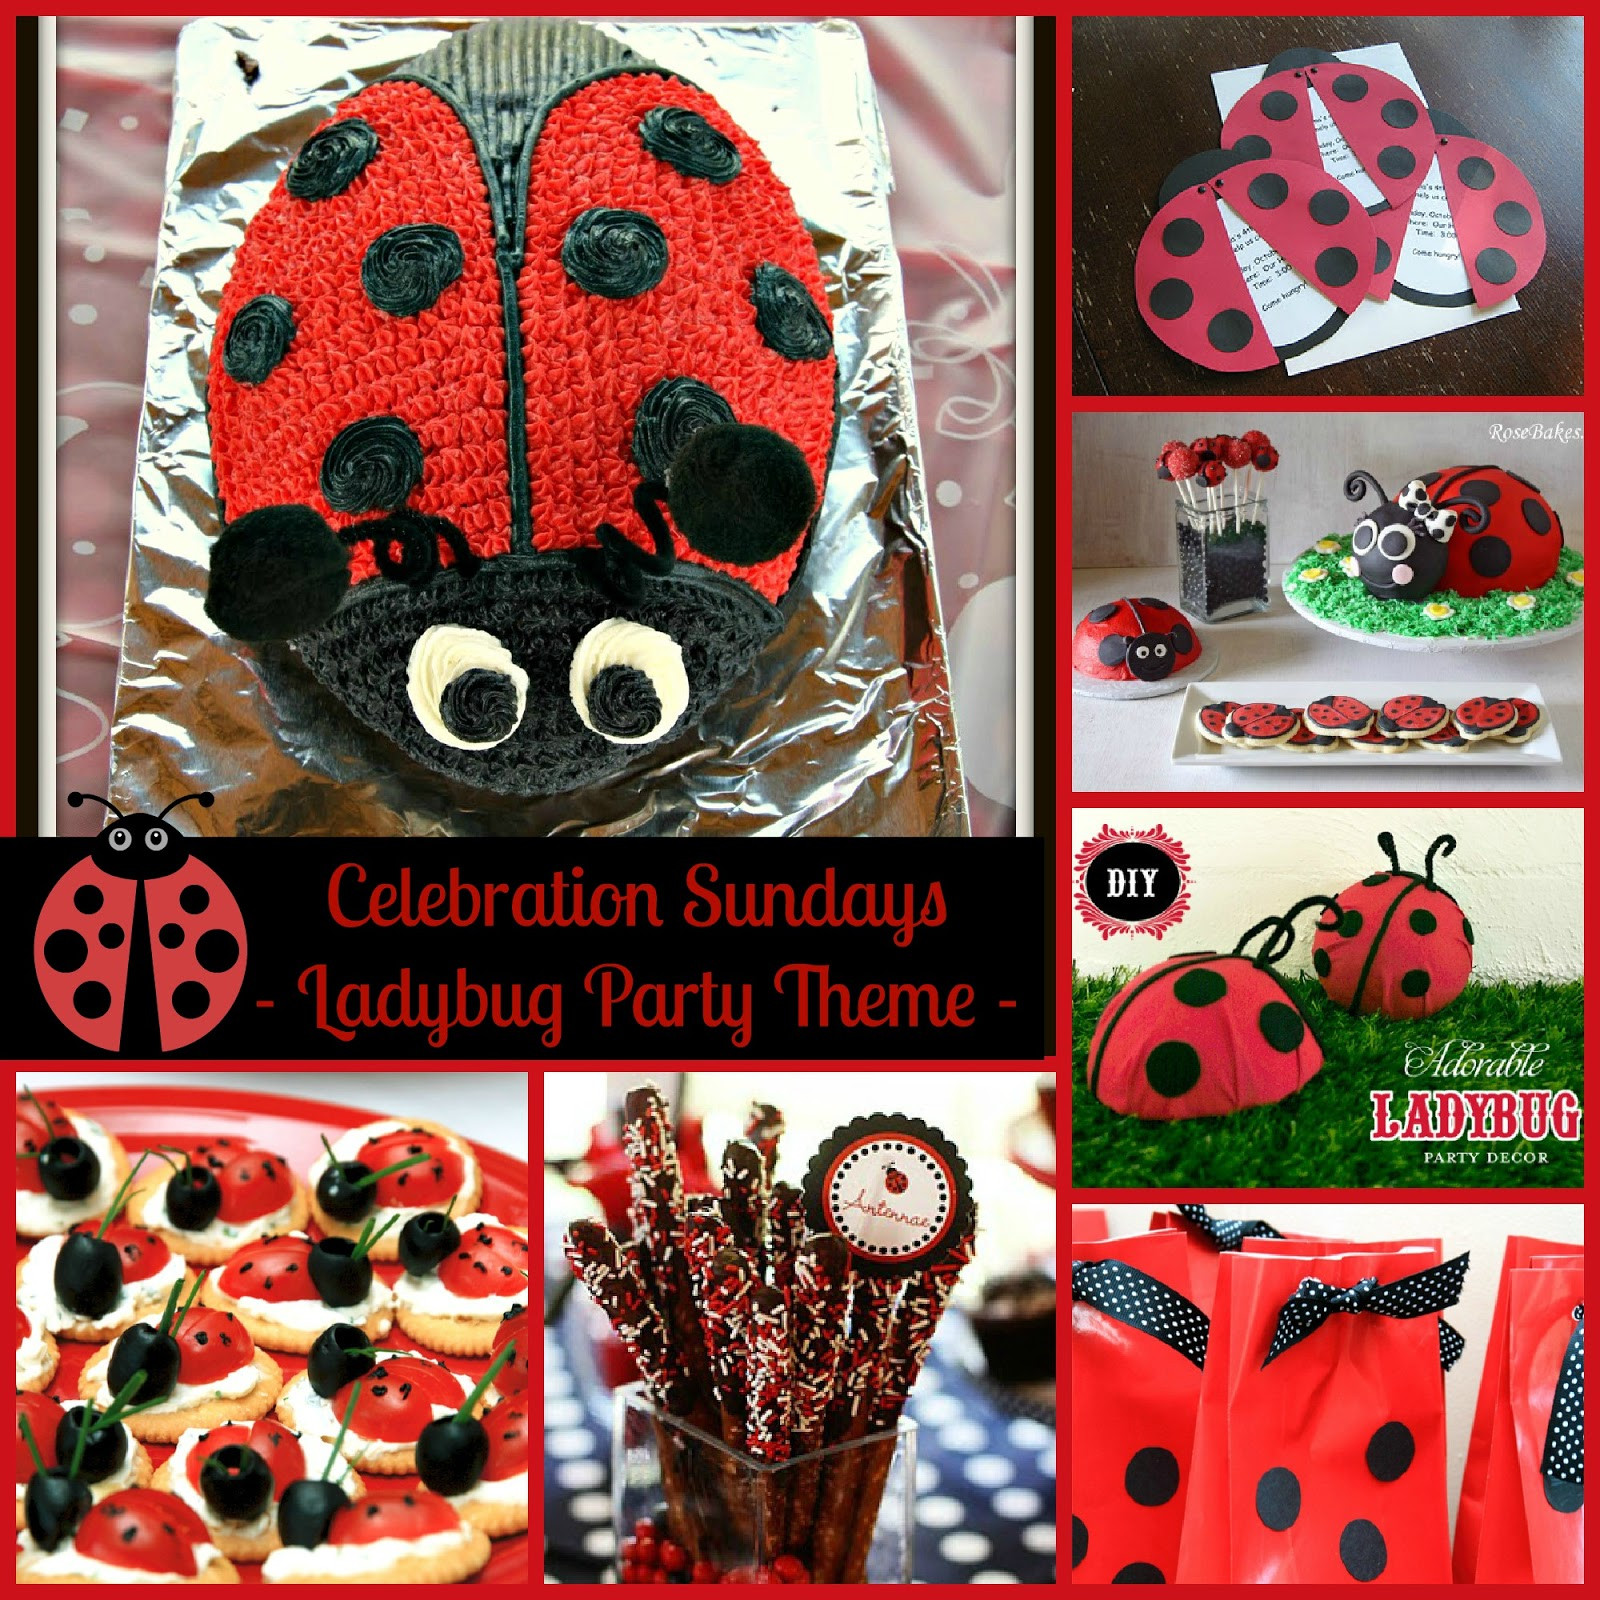 Ladybug 1st Birthday Decorations
 The Mandatory Mooch Celebration Sundays Ladybug Party Theme